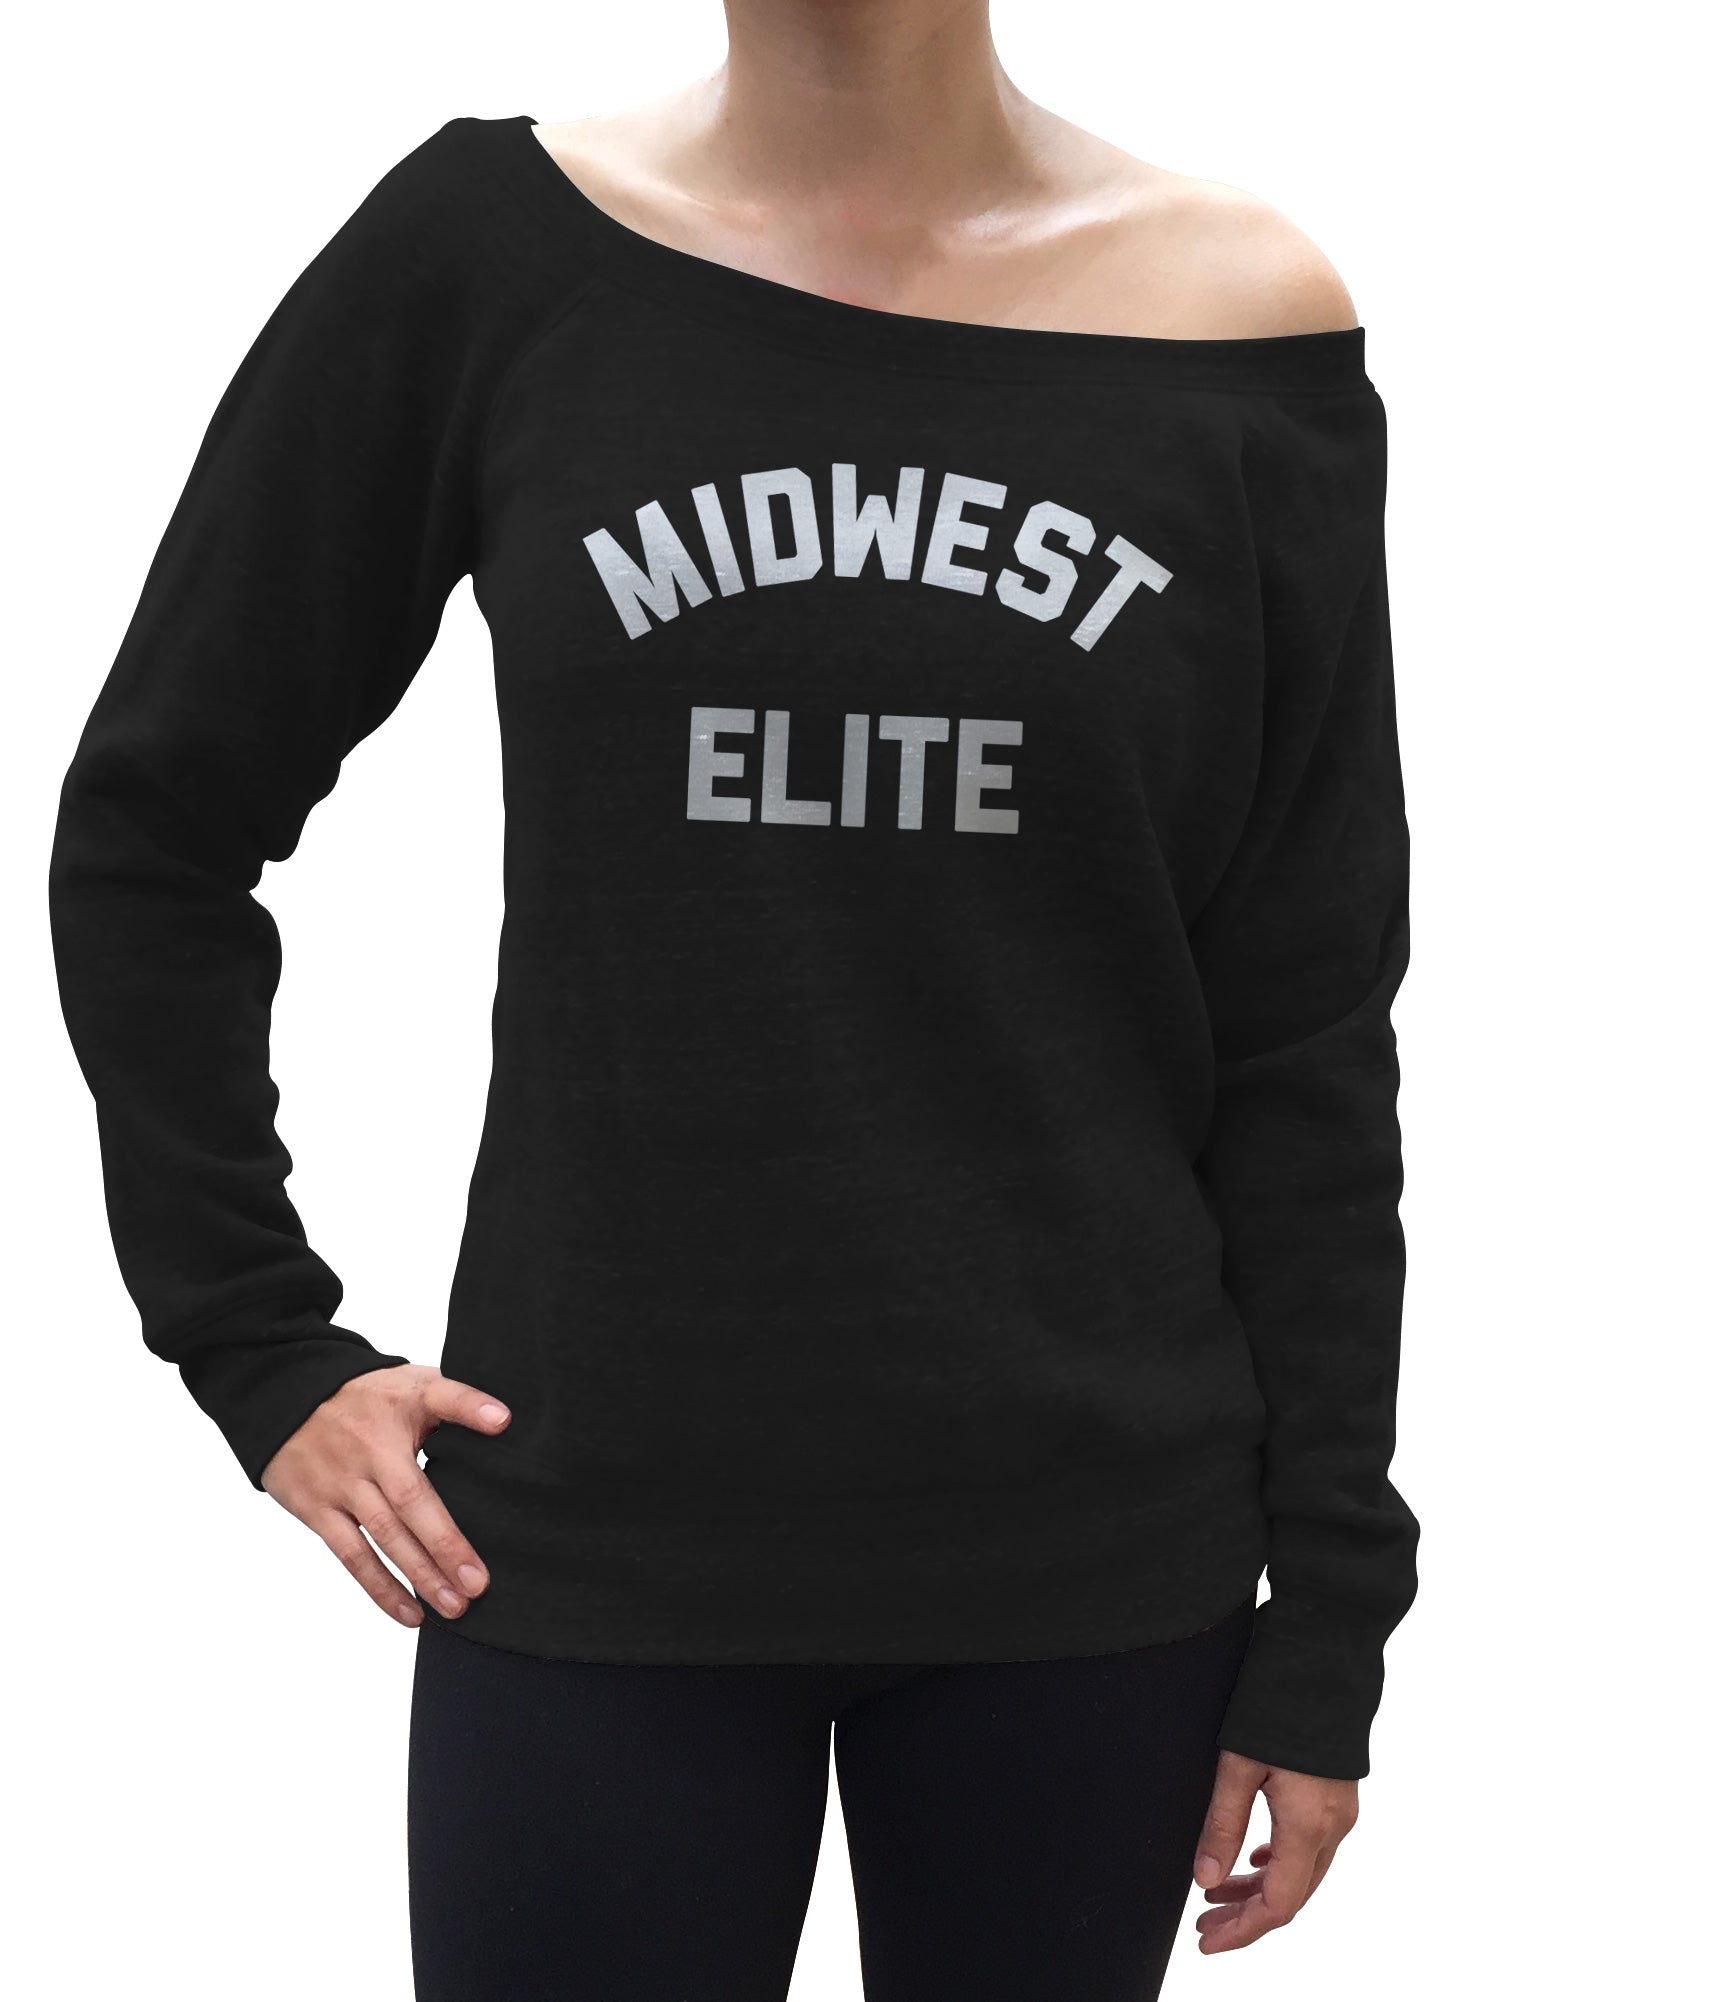 Women's Midwest Elite Scoop Neck Fleece